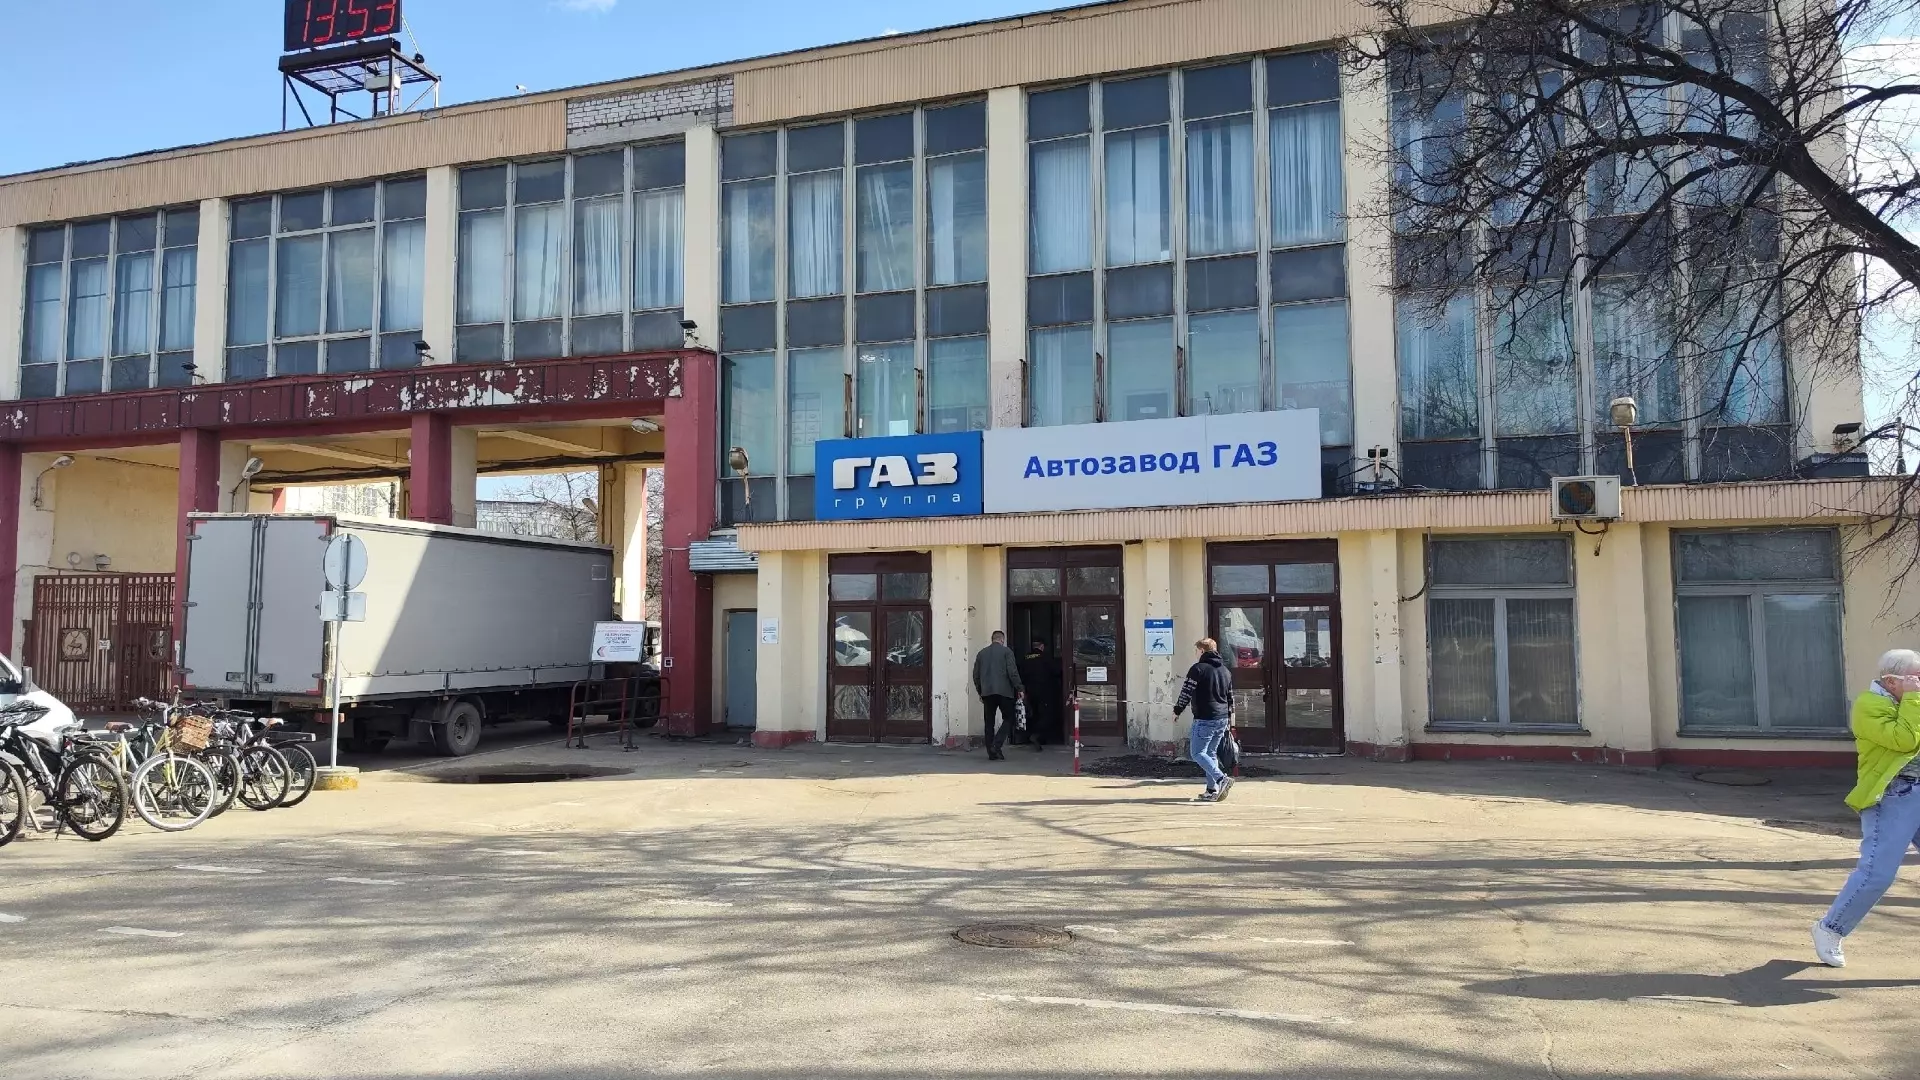 Отложения в прессовом отсеке загорелись на Горьковском автозаводе 24 января